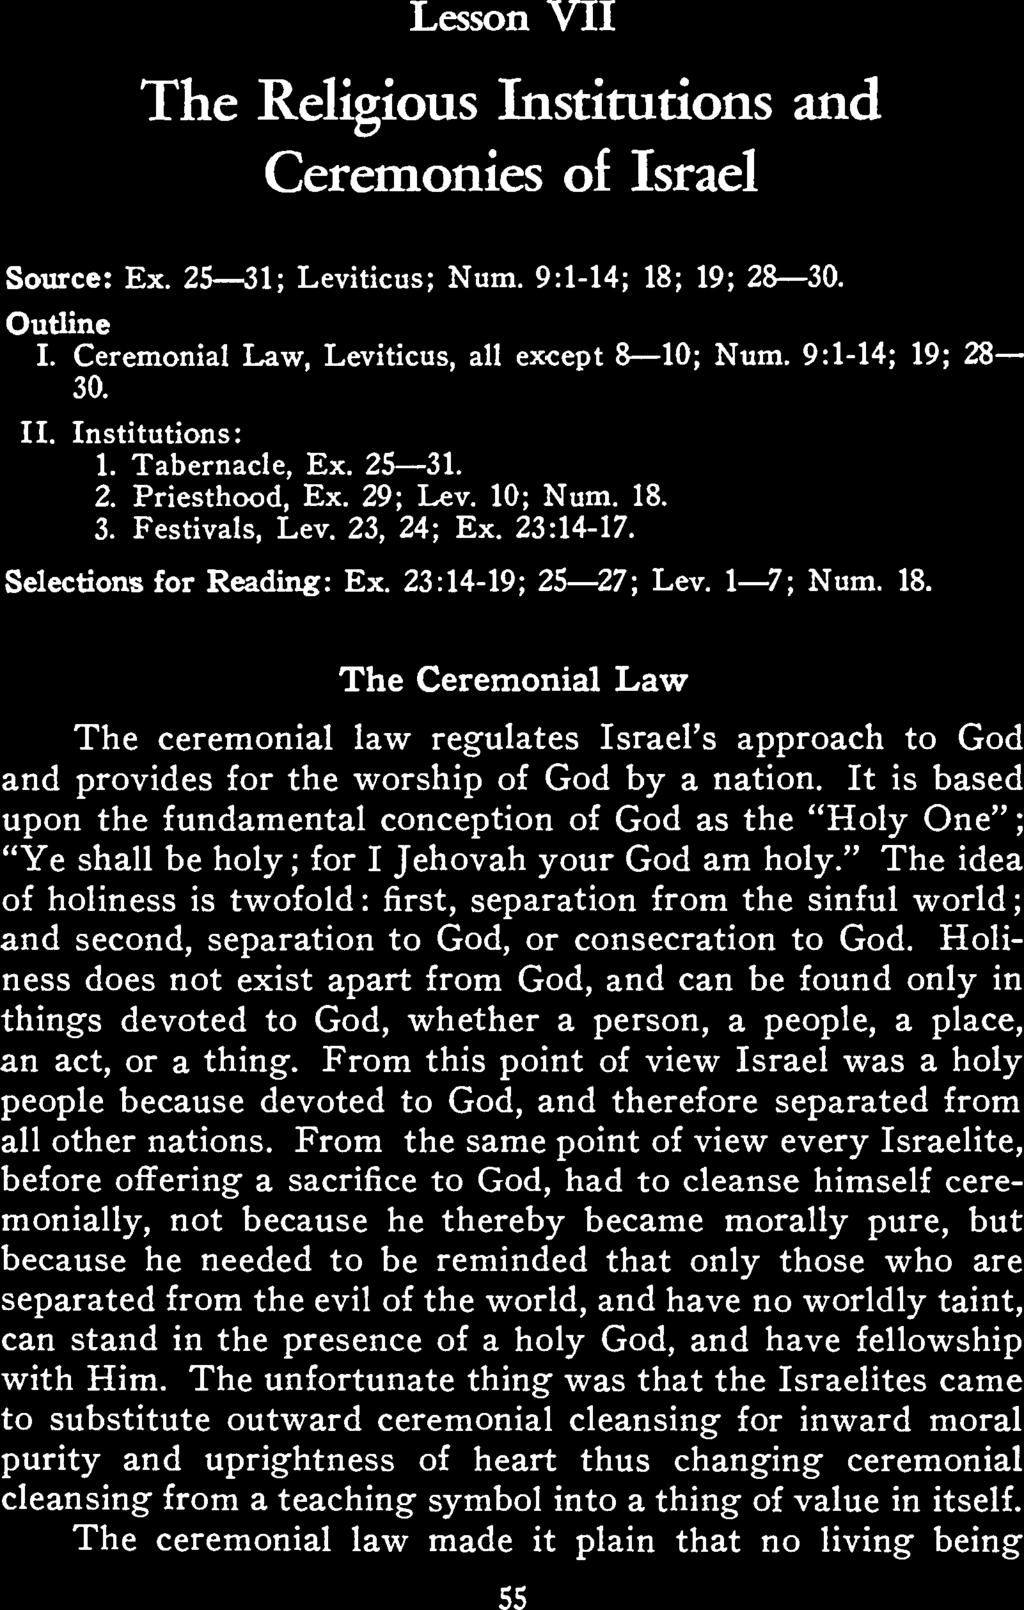 Lesson VII The Religious Institutions nd Ceremonies of Isrel Source: Ex. 25 31; Leviticus; Num. 9:1-14; 18; 19; 28 30. Outline I. Ceremonil Lw, Leviticus, ll except 8 10; Num. 9:1-14; 19; 28 30. II.